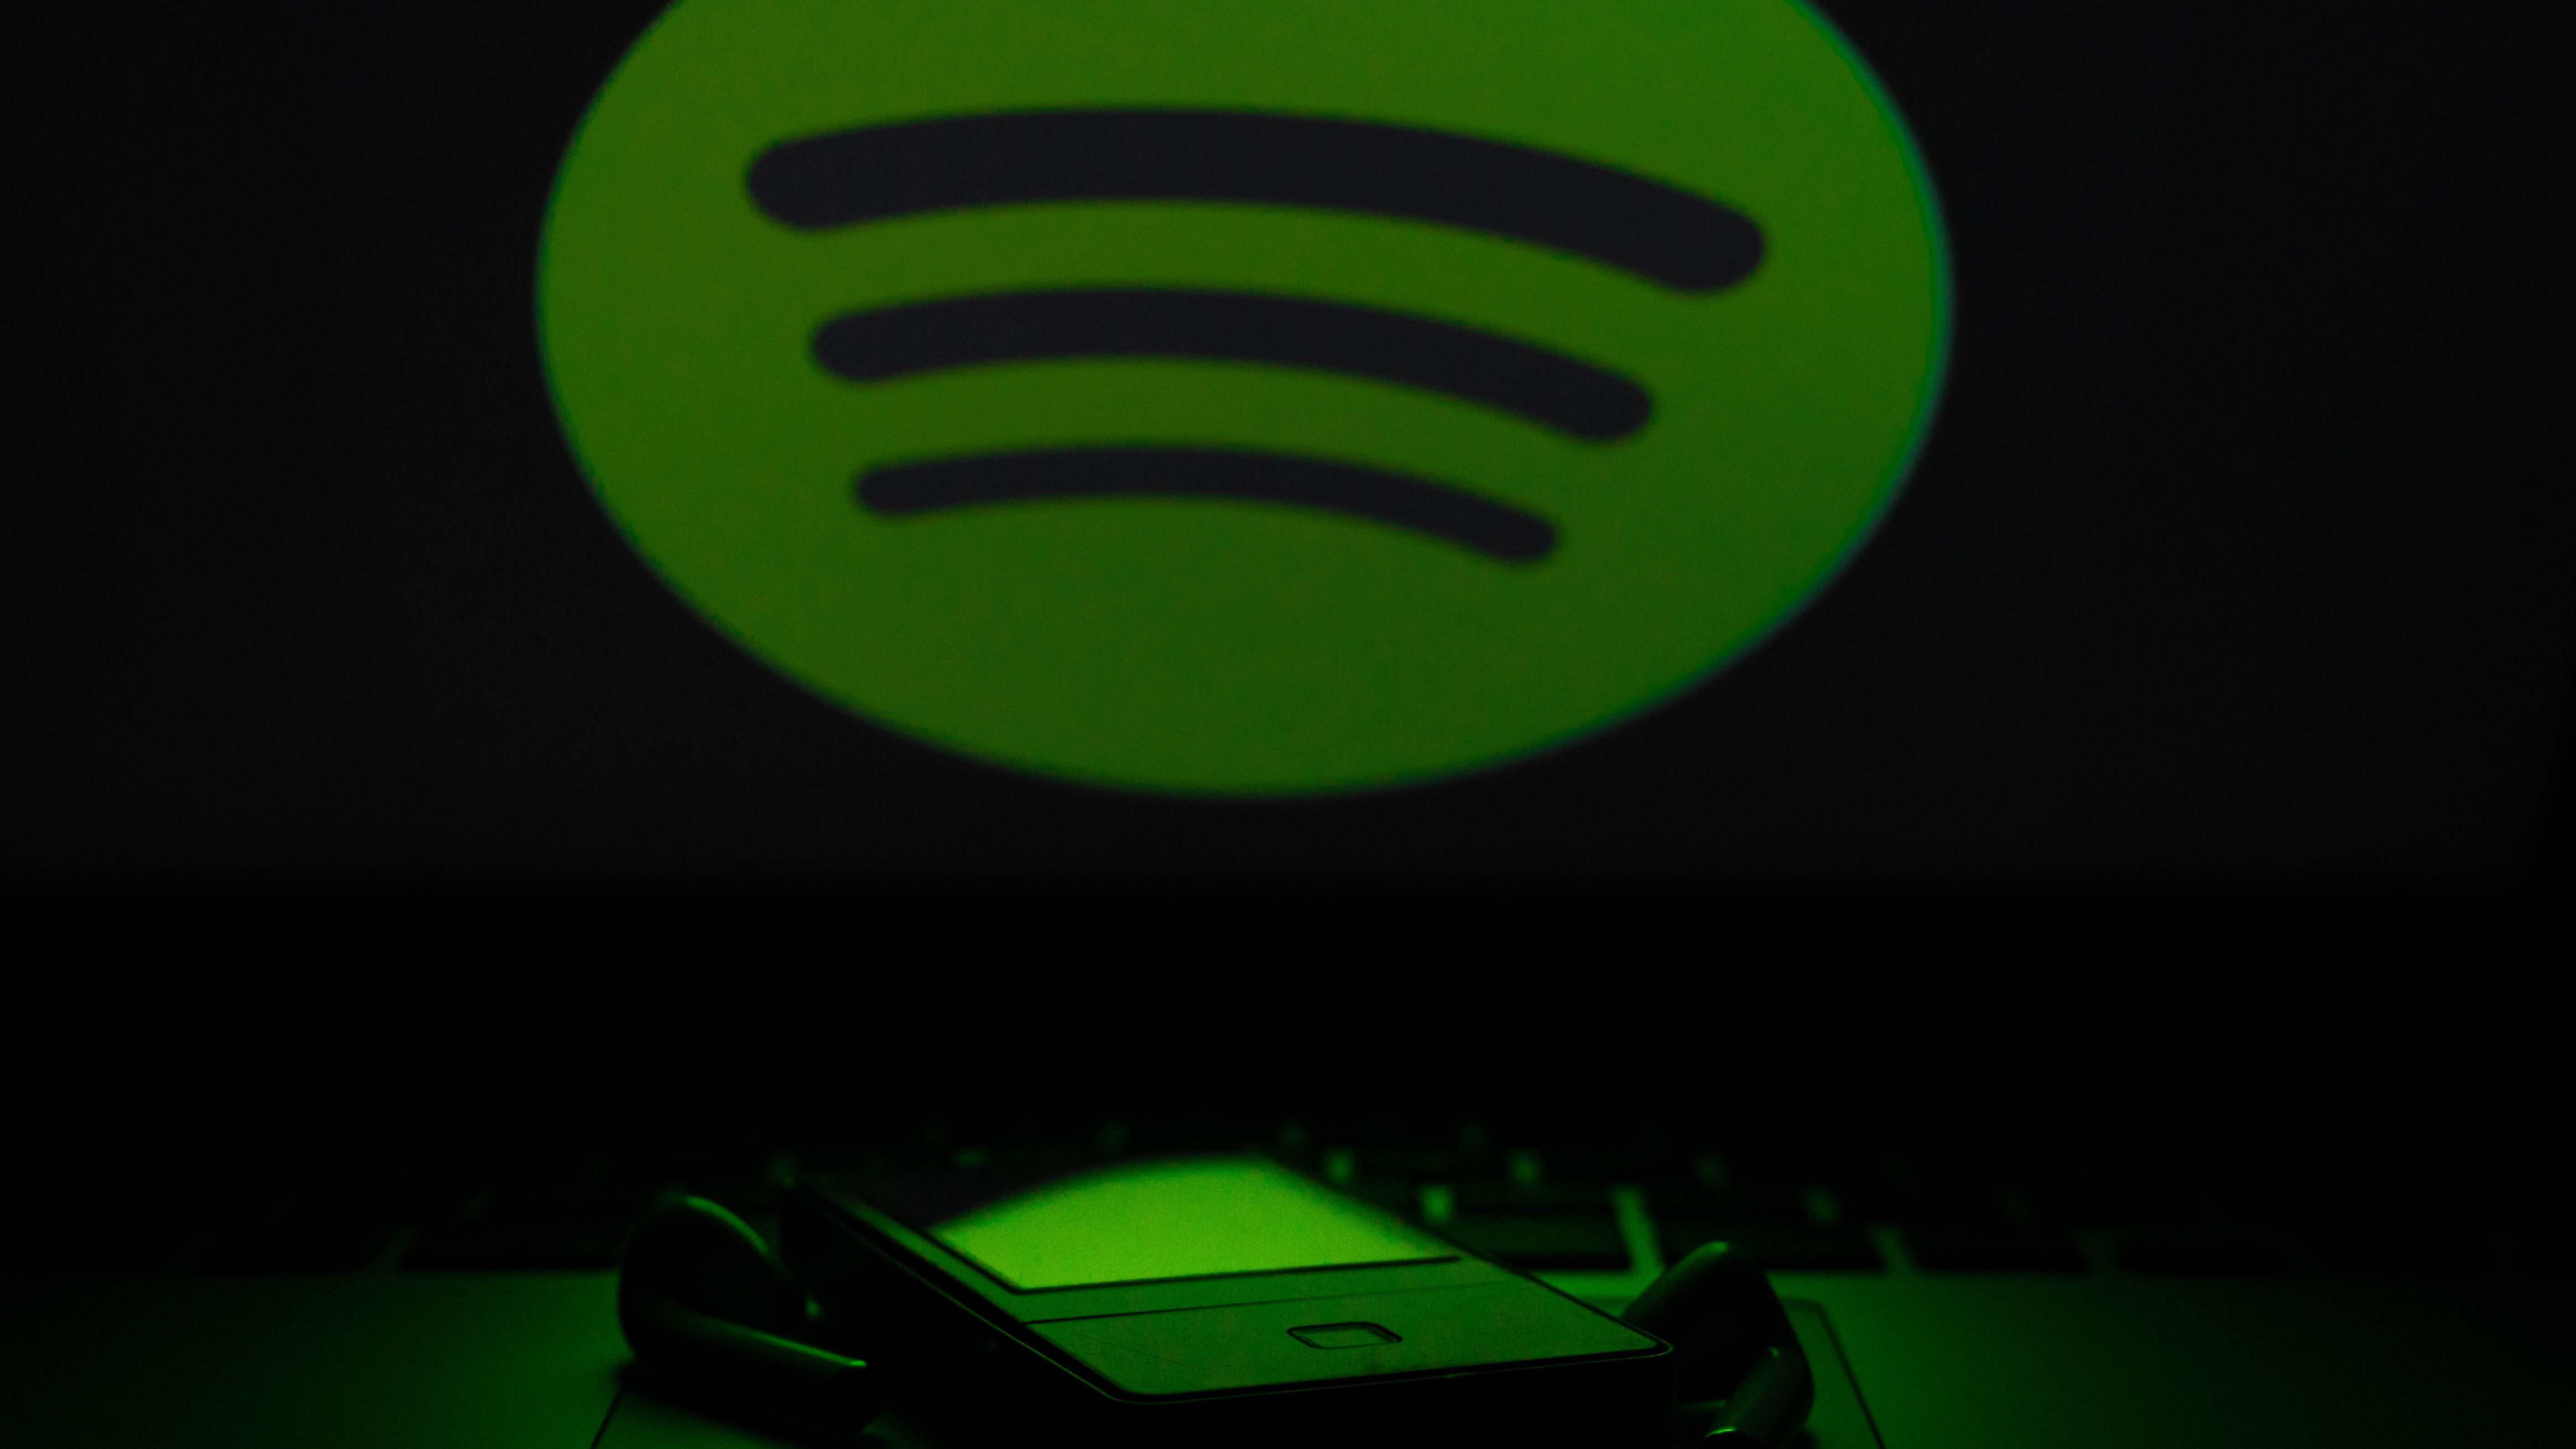 Spotify fechou acordo secreto com a Google que lhe permite não